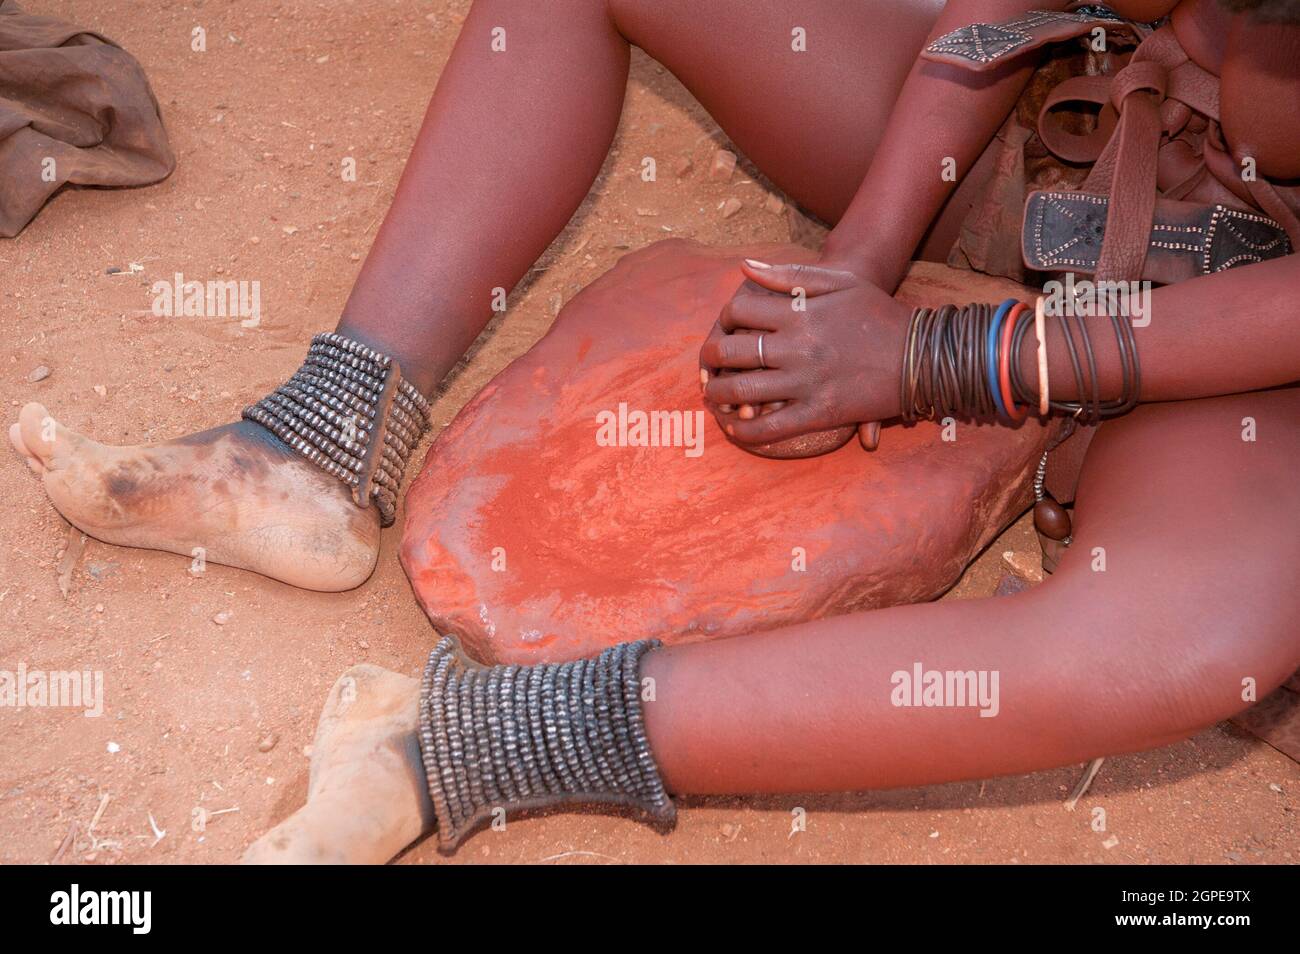 Femme Himba écrase d'argile rouge, c'est ensuite utilisé pour enduire leurs cheveux. Photographié dans un village Himba, Epupa Falls, Kaokoland, Namibie, Afrique Banque D'Images